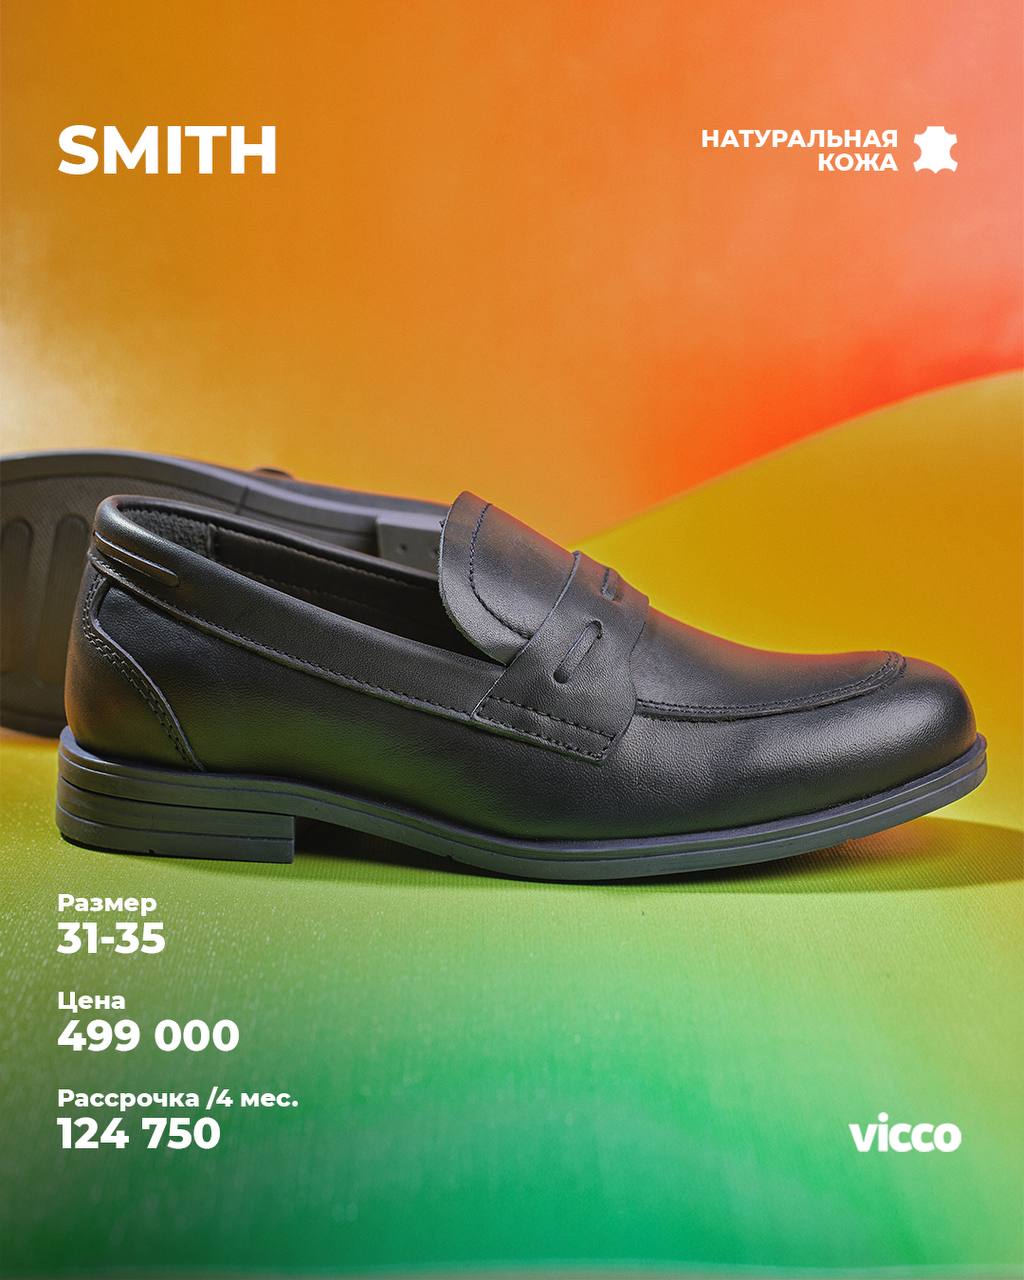 Купить школьную обувь - Коллекция Smith